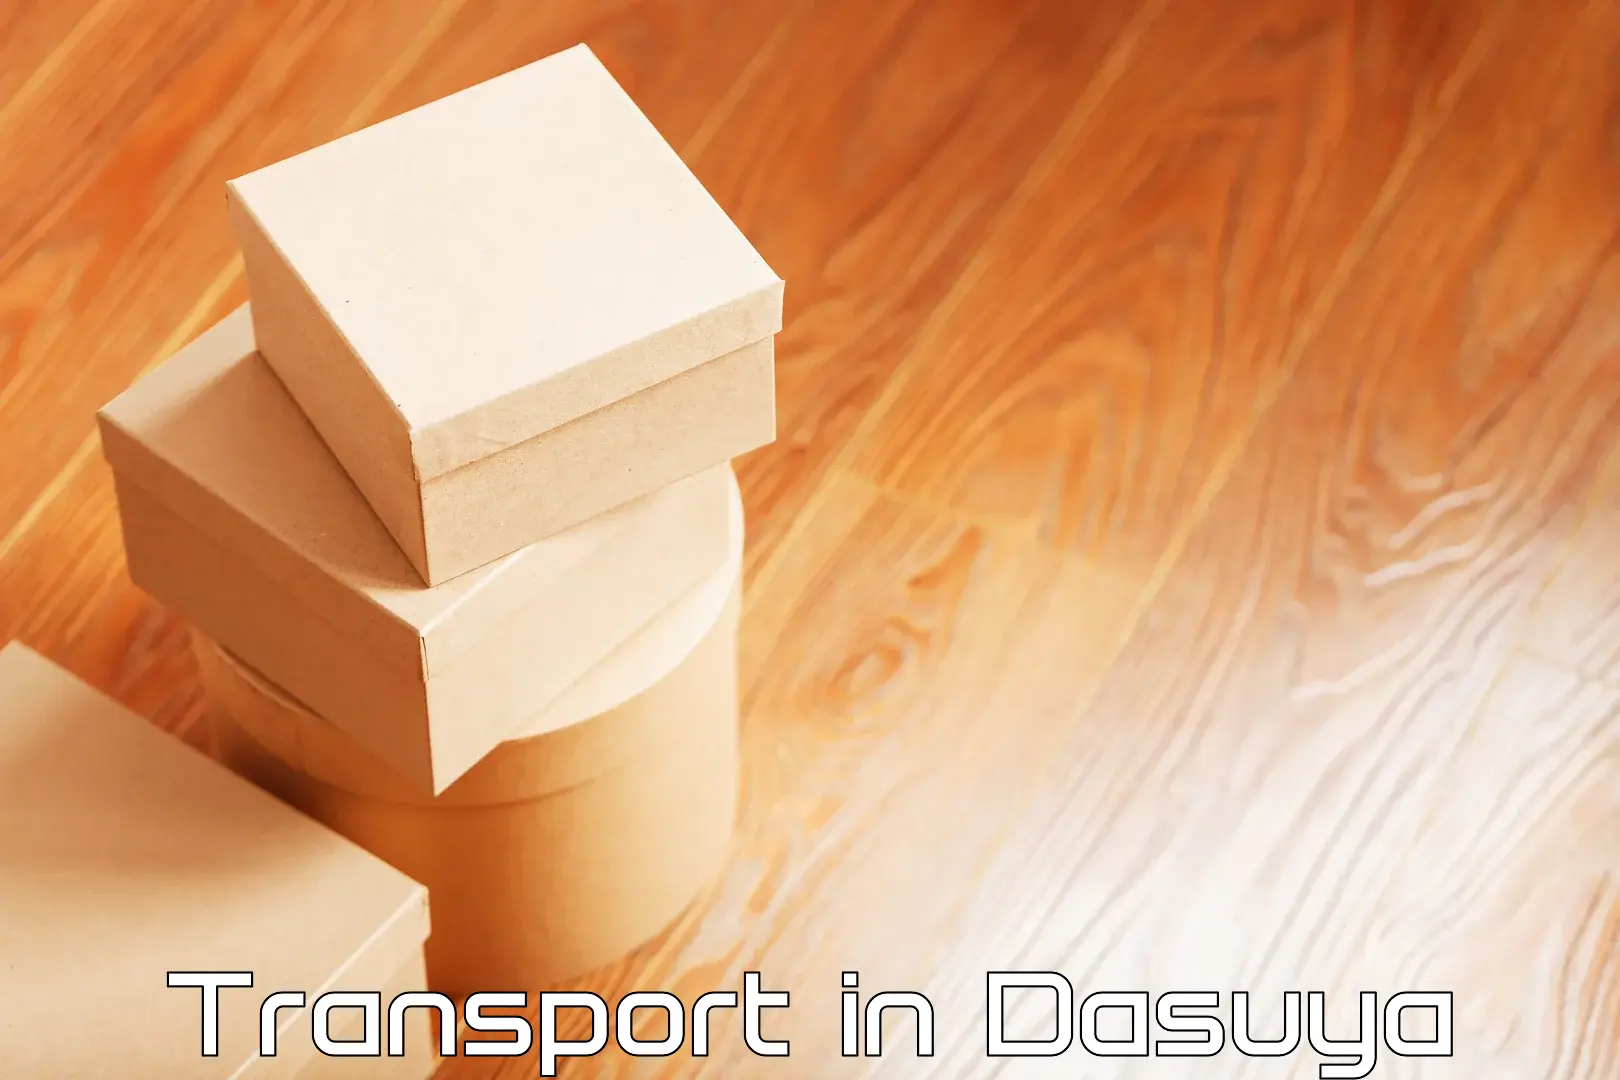 Furniture transport service in Dasuya